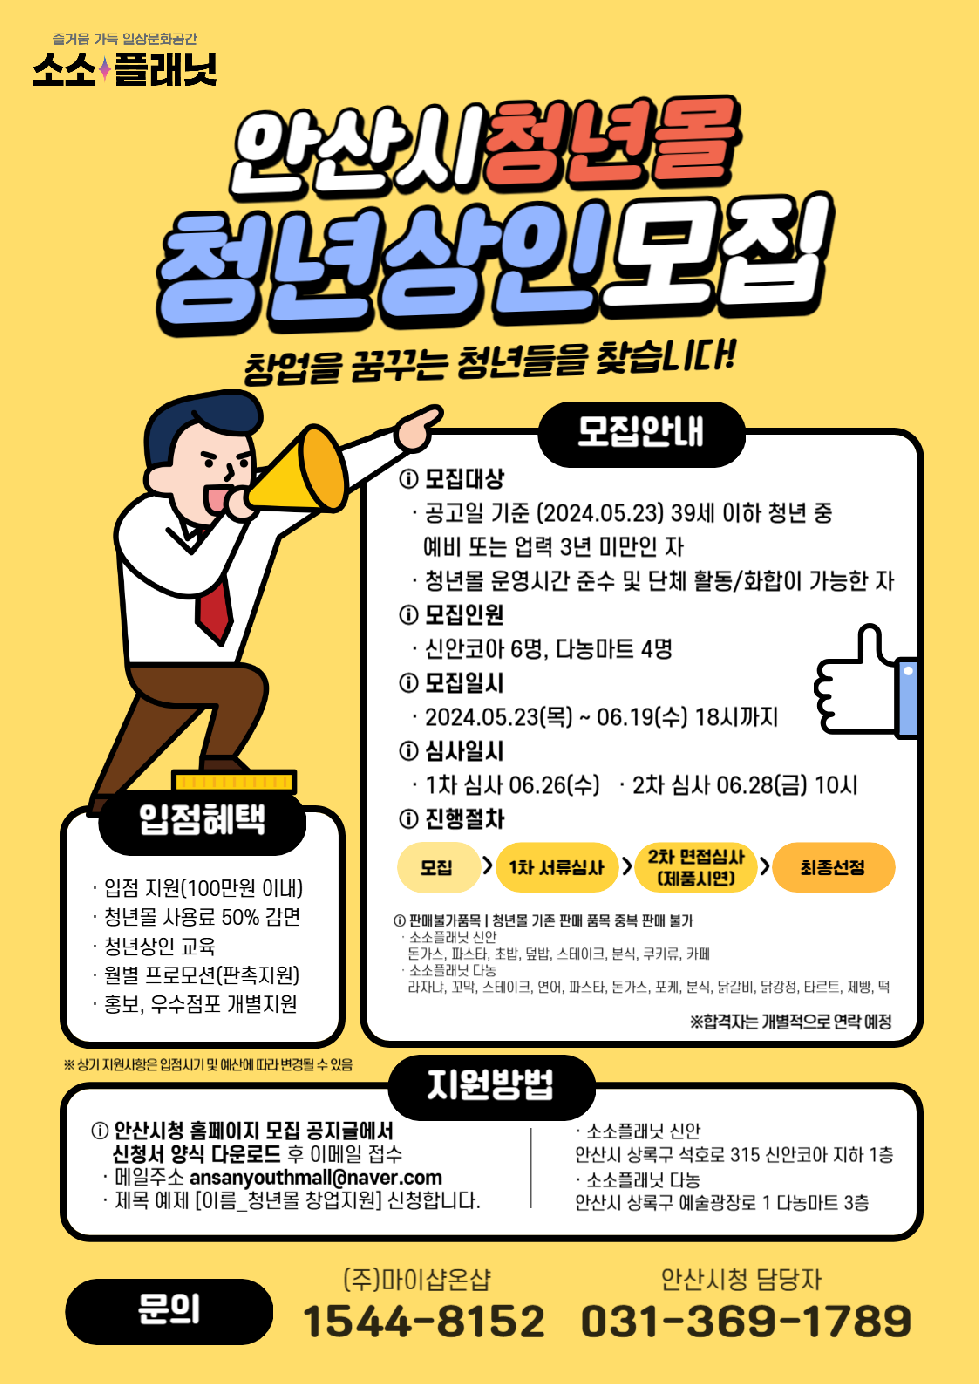 안산시  청년몰‘소소플래닛’사용료 50% 감면… 신규 입점자 모집